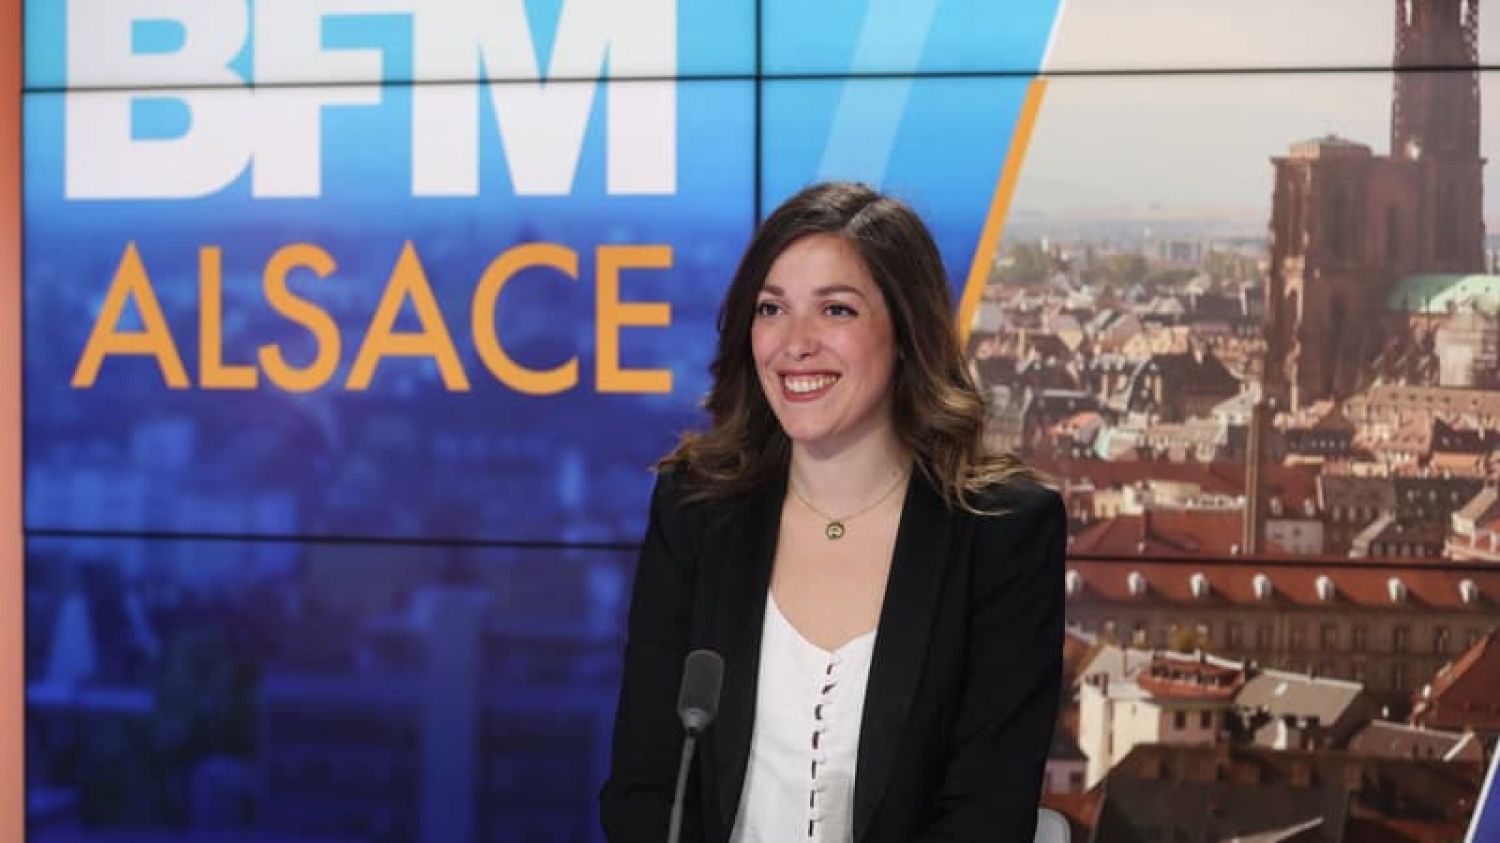 BFM Alsace : la nouvelle télévision locale lancée aujourd'hui 